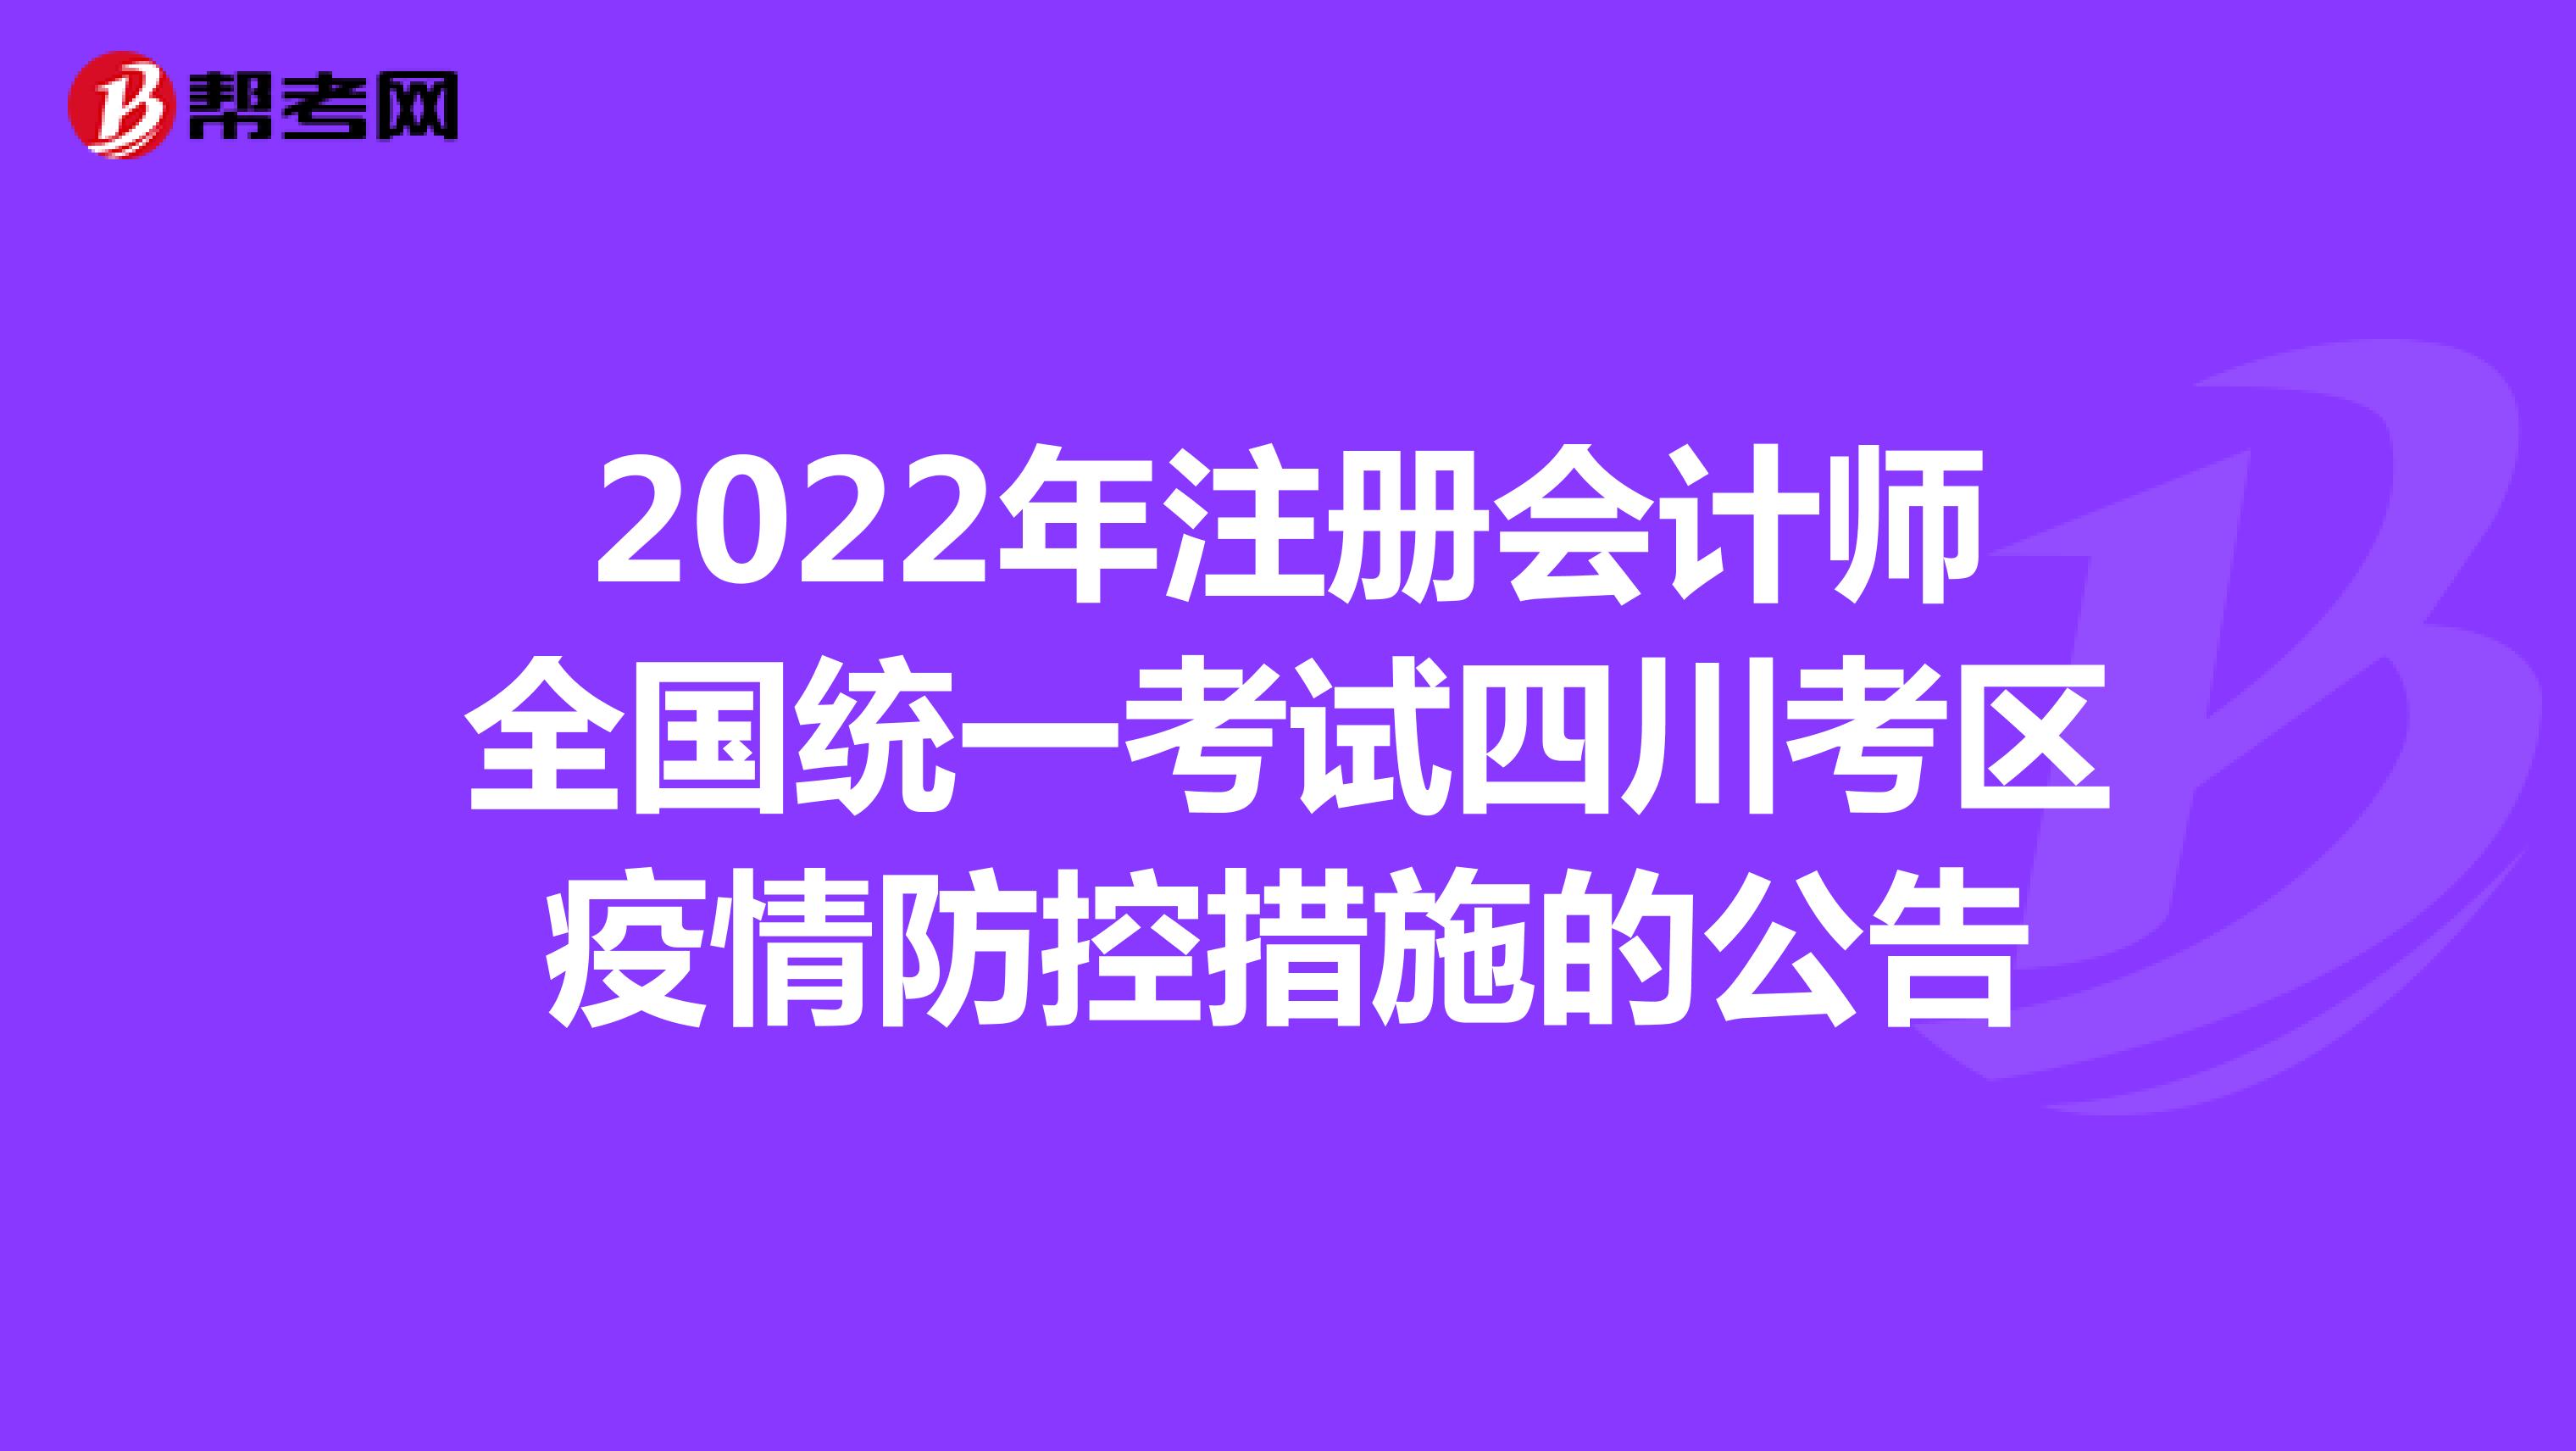 2022年注册会计师全国统一考试四川考区疫情防控措施的公告